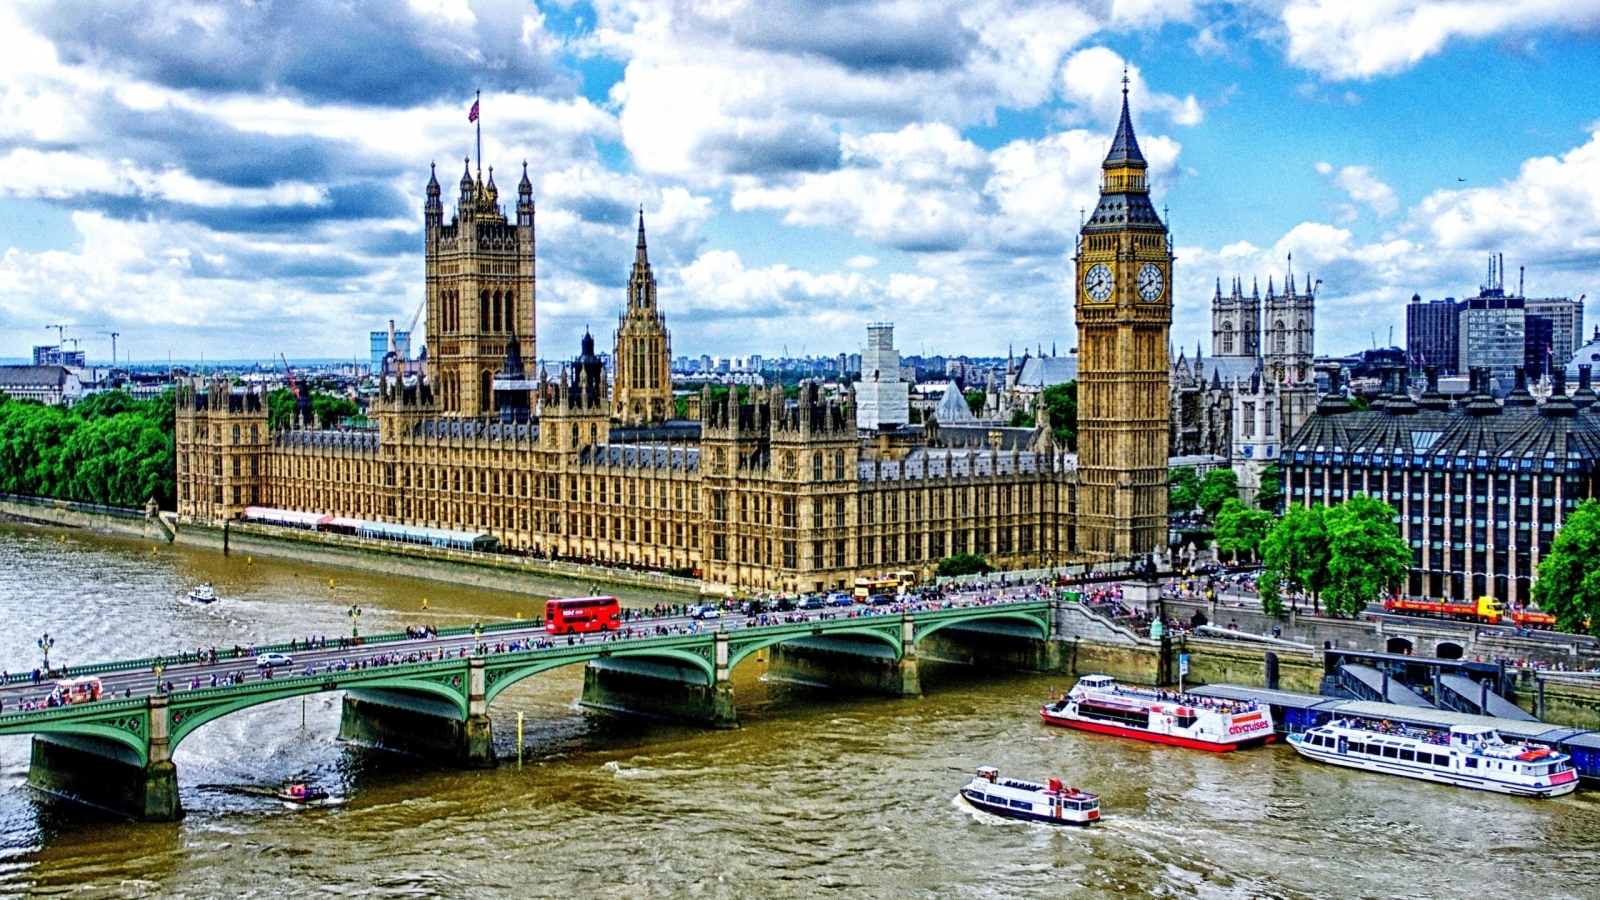 Westminster Bridge London for 1600 x 900 HDTV resolution